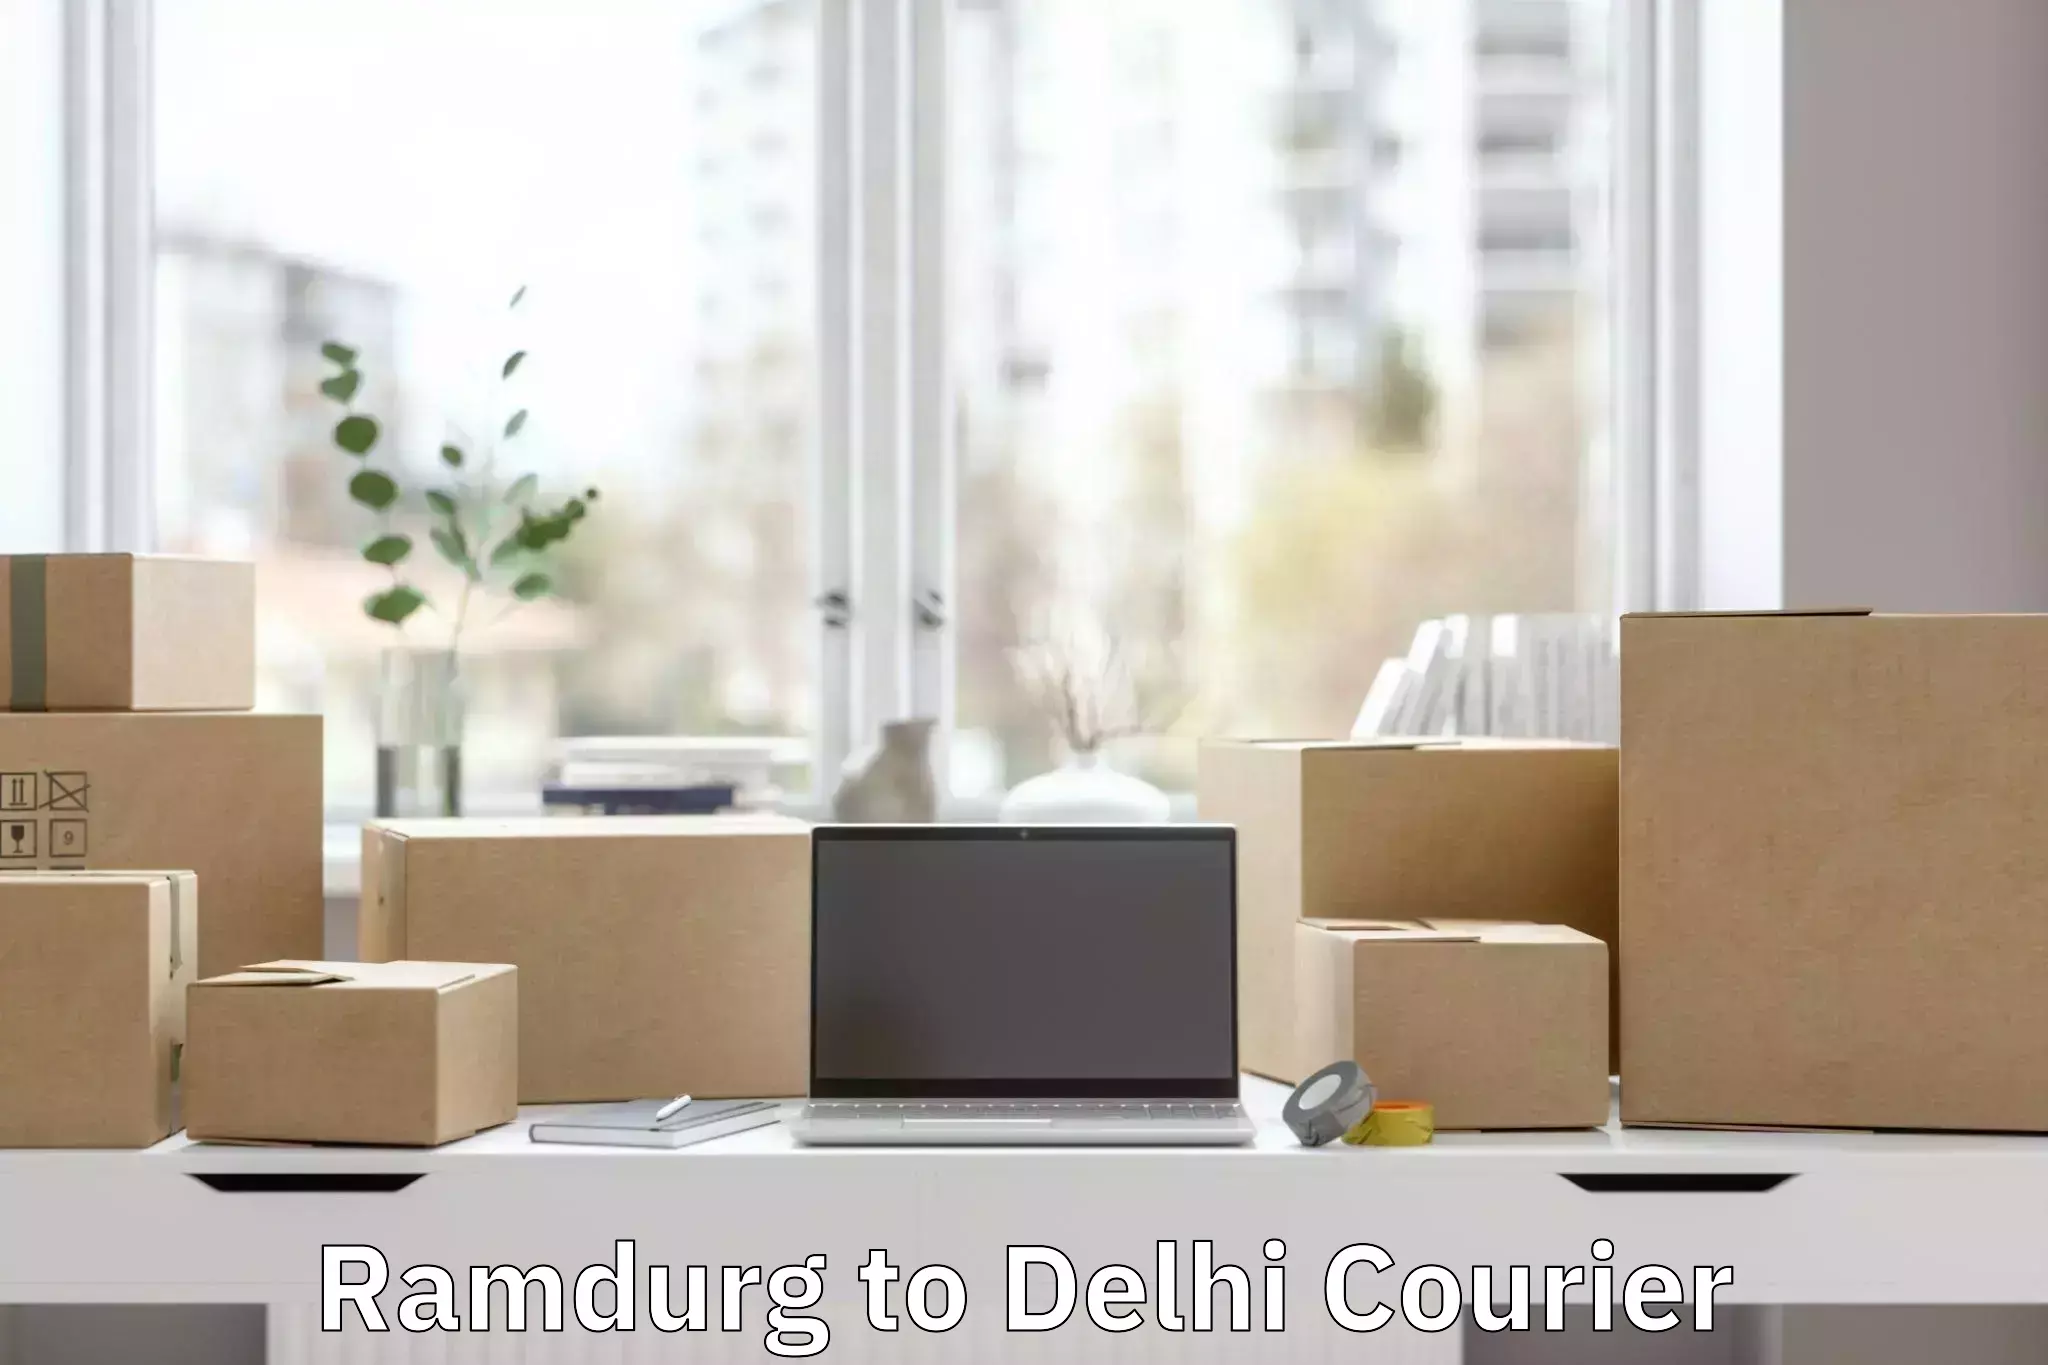 Baggage relocation service Ramdurg to Delhi